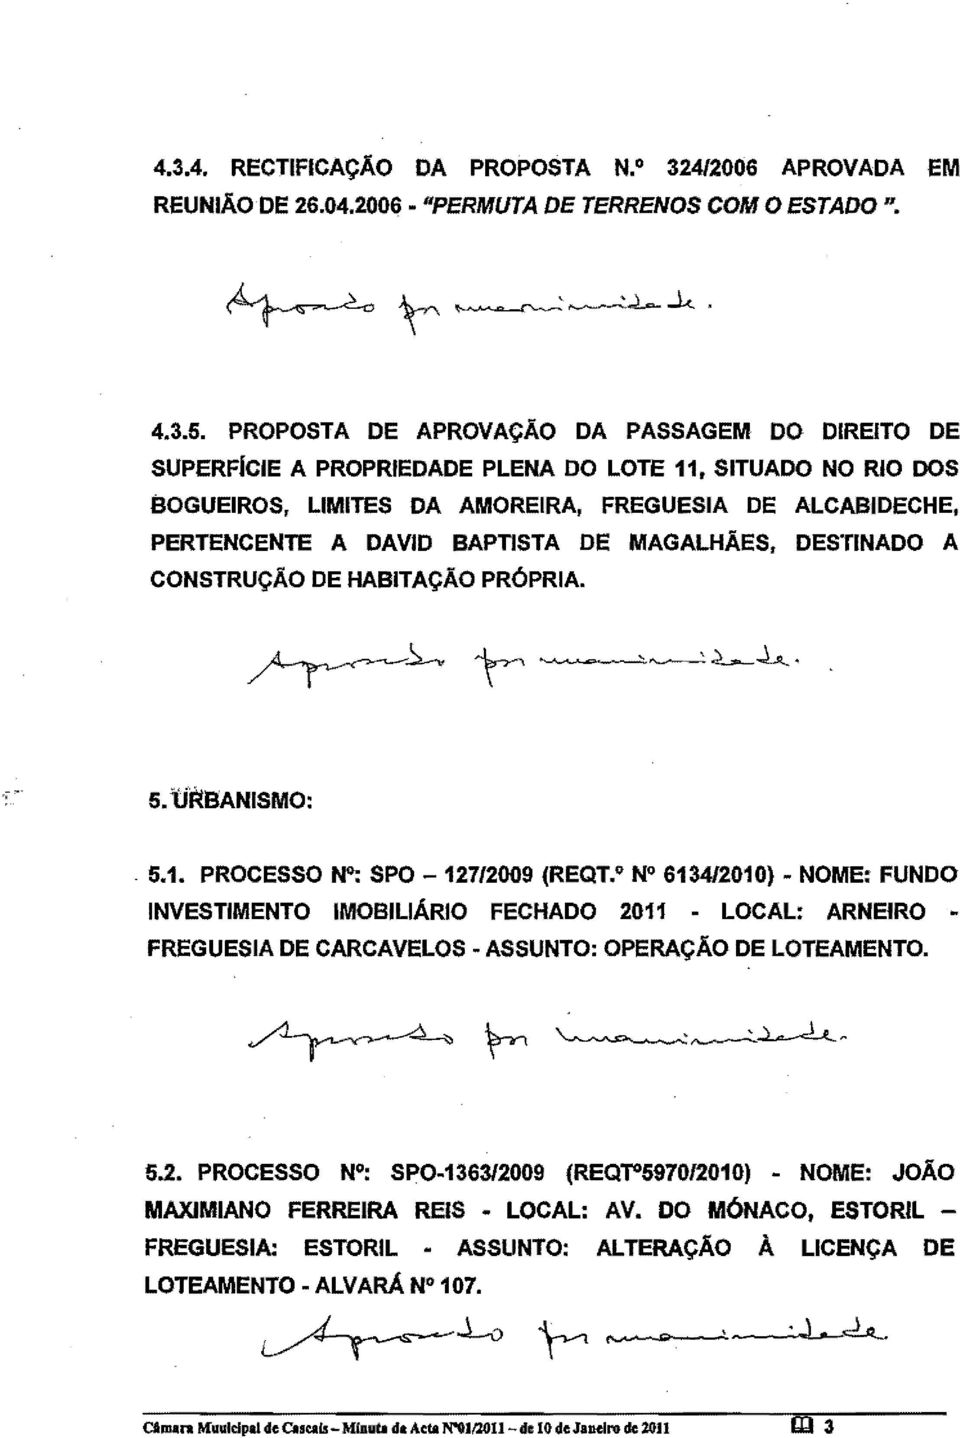 MAGALHAES, DESTINADO A CONSTRUCAO DE HABITACAO PR6PRIA., S.li~BANISMO:. 5.1. PROCESSO~: SPO - 127/2009 (REQT.